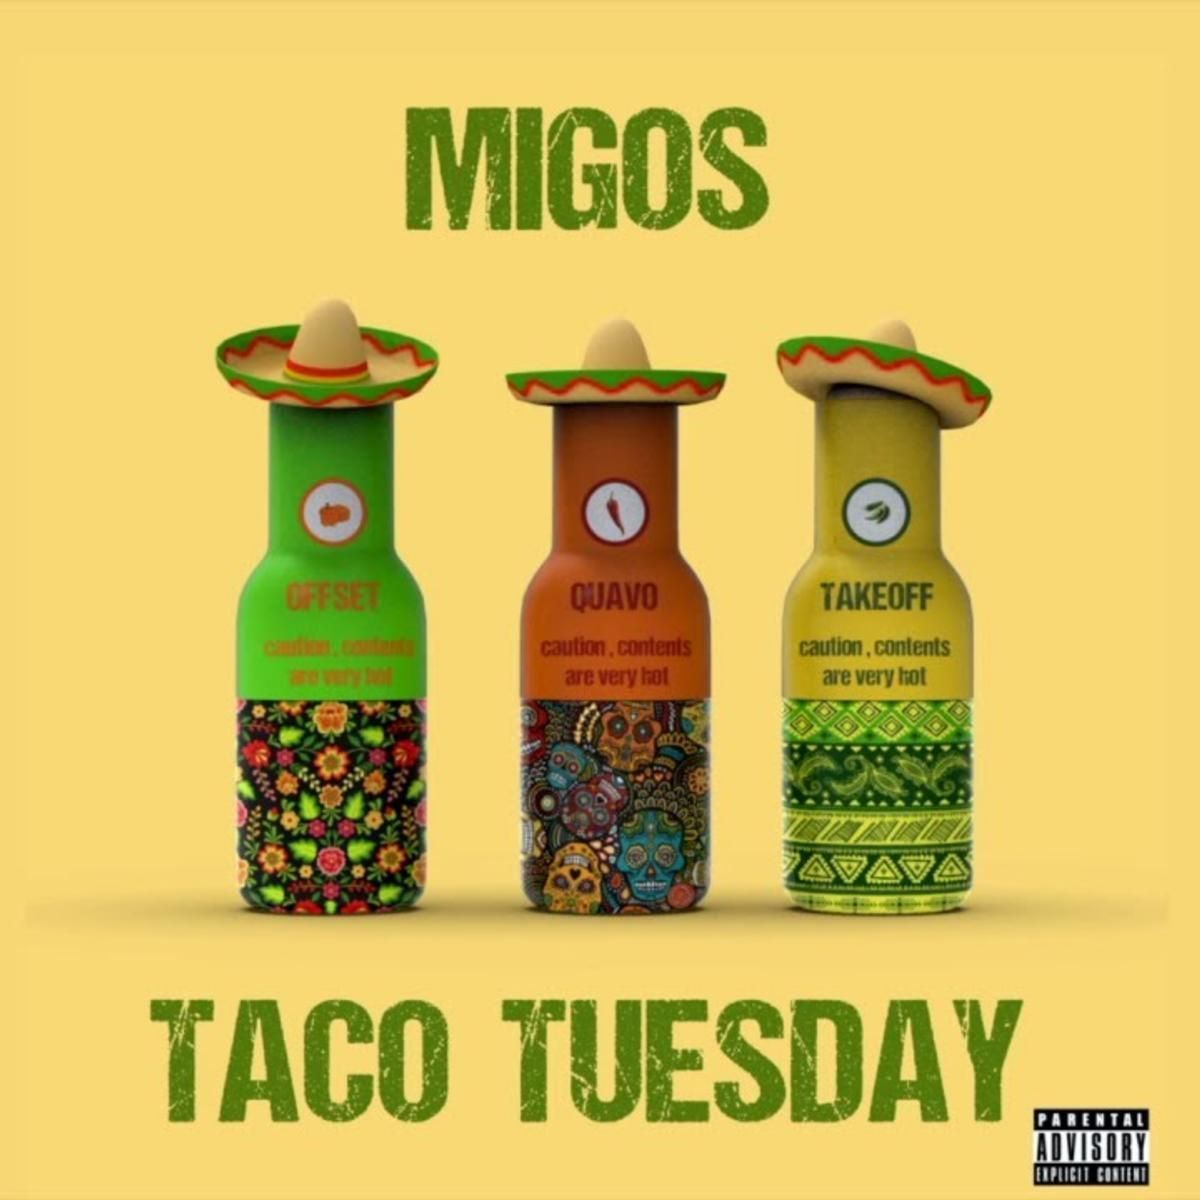 Taco Tuesday. Migos, Taco tuesday, Migos quavo